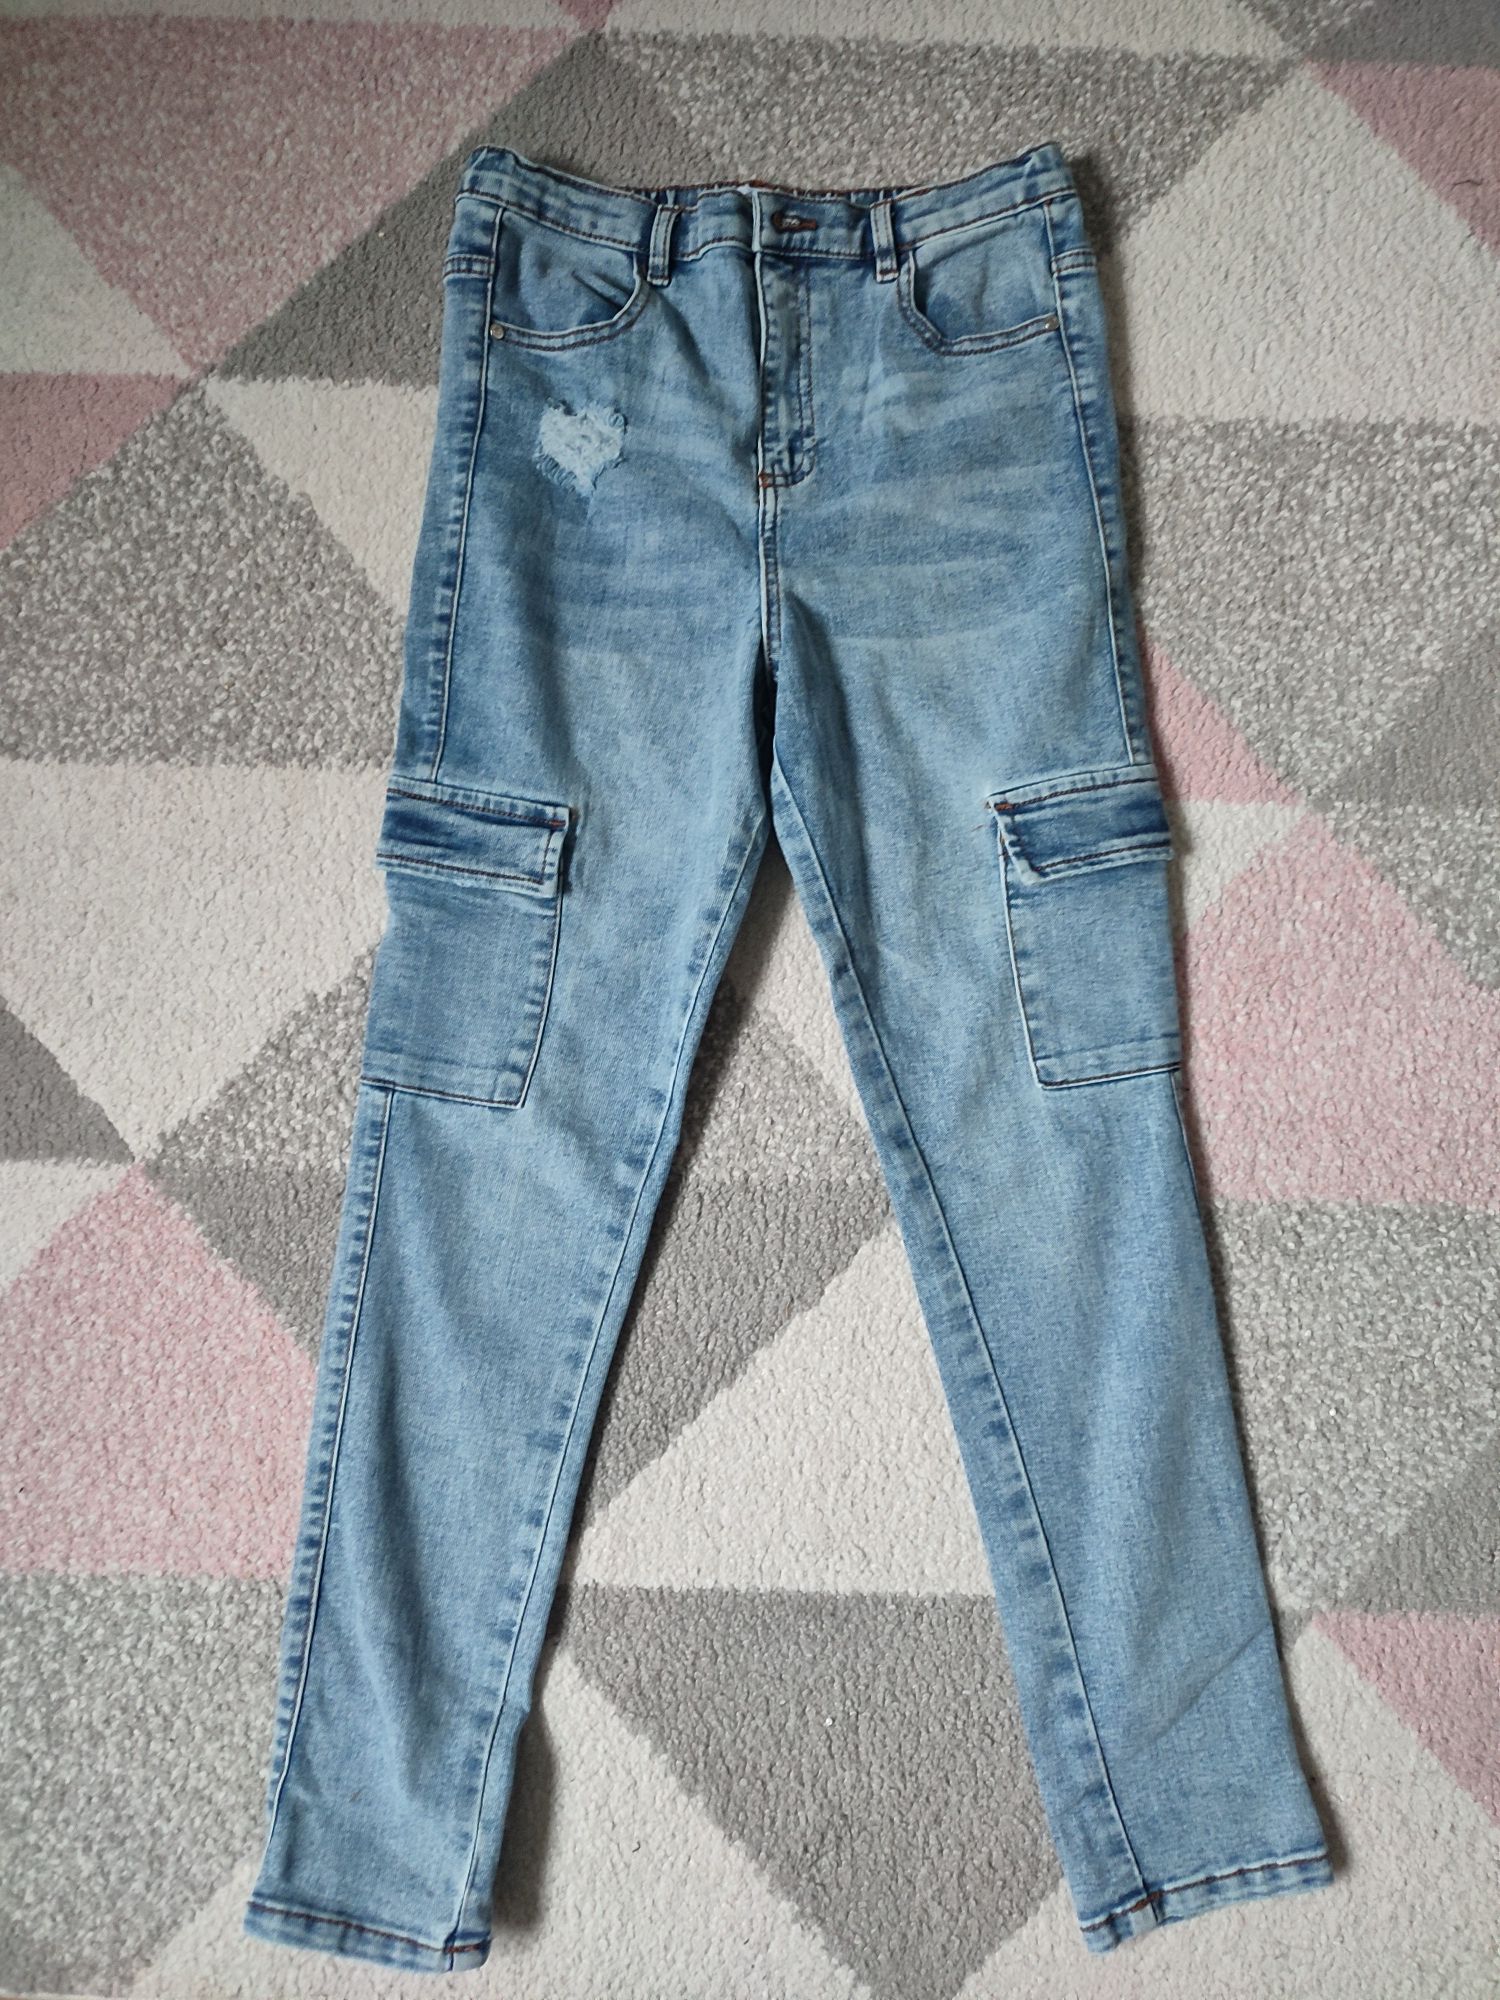 Spodnie jeansowe Sinsay 152 NOWE